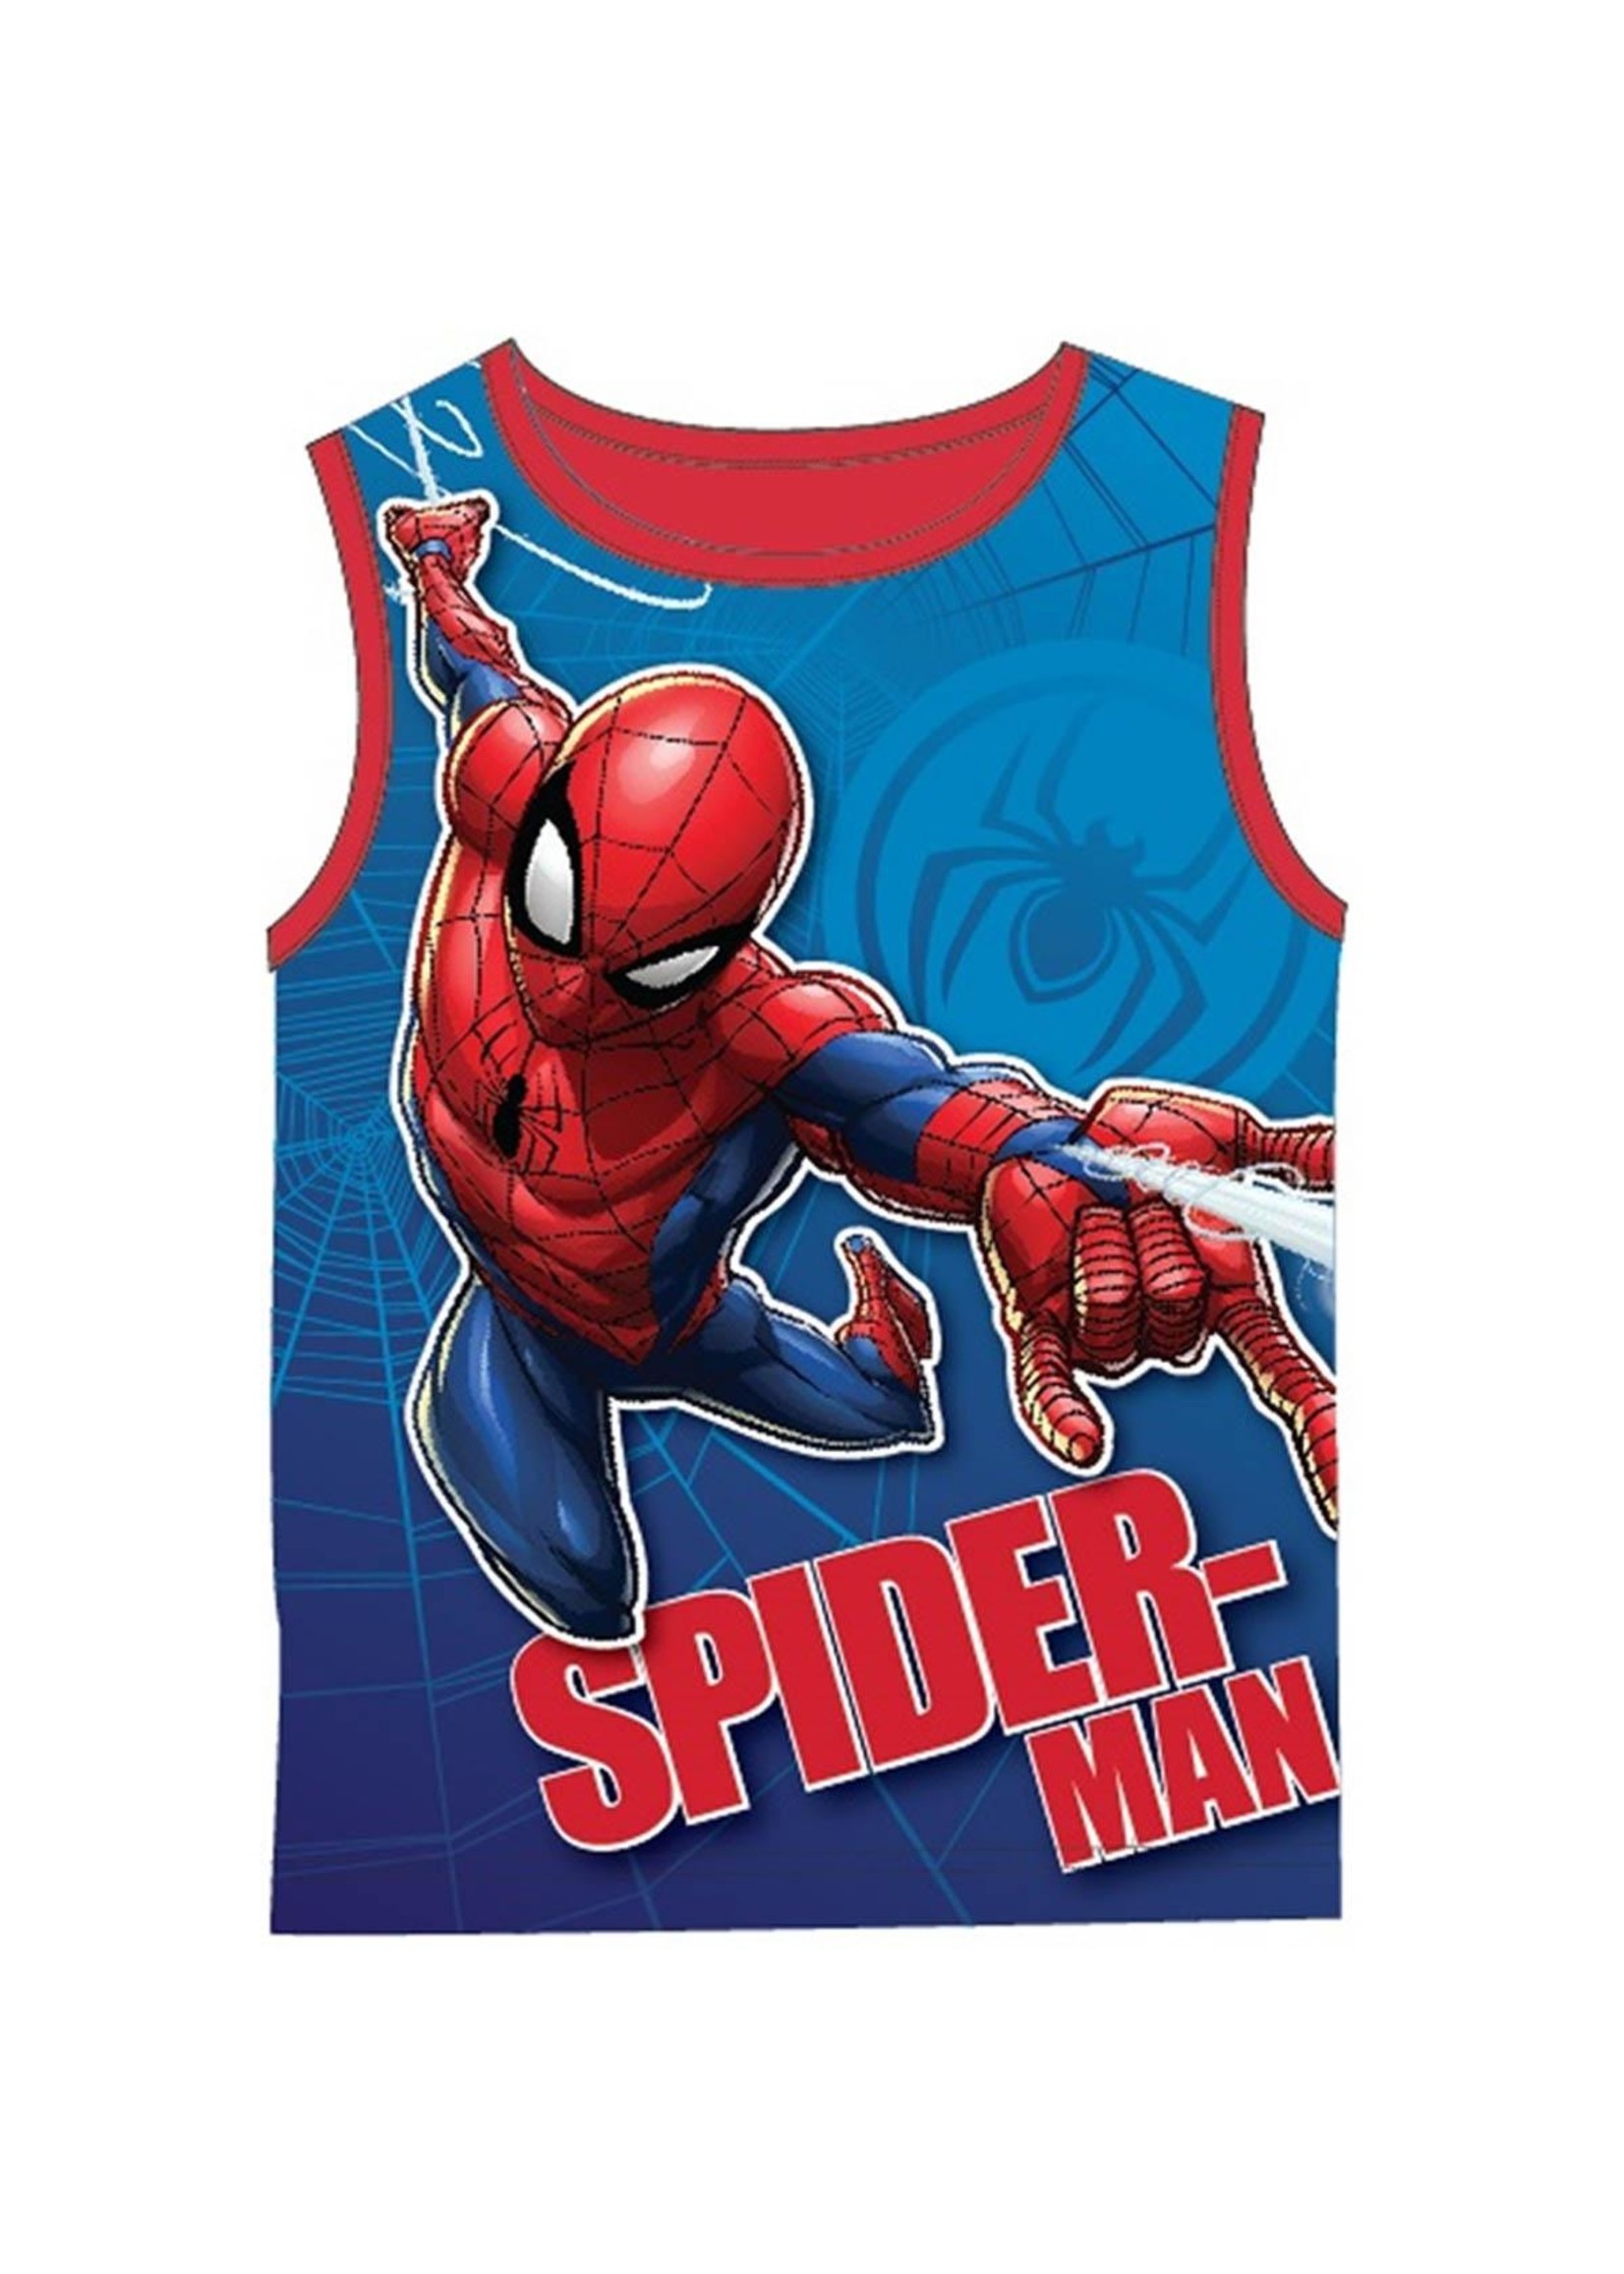 Marvel Spiderman sleeveless shirt from Marvel blue